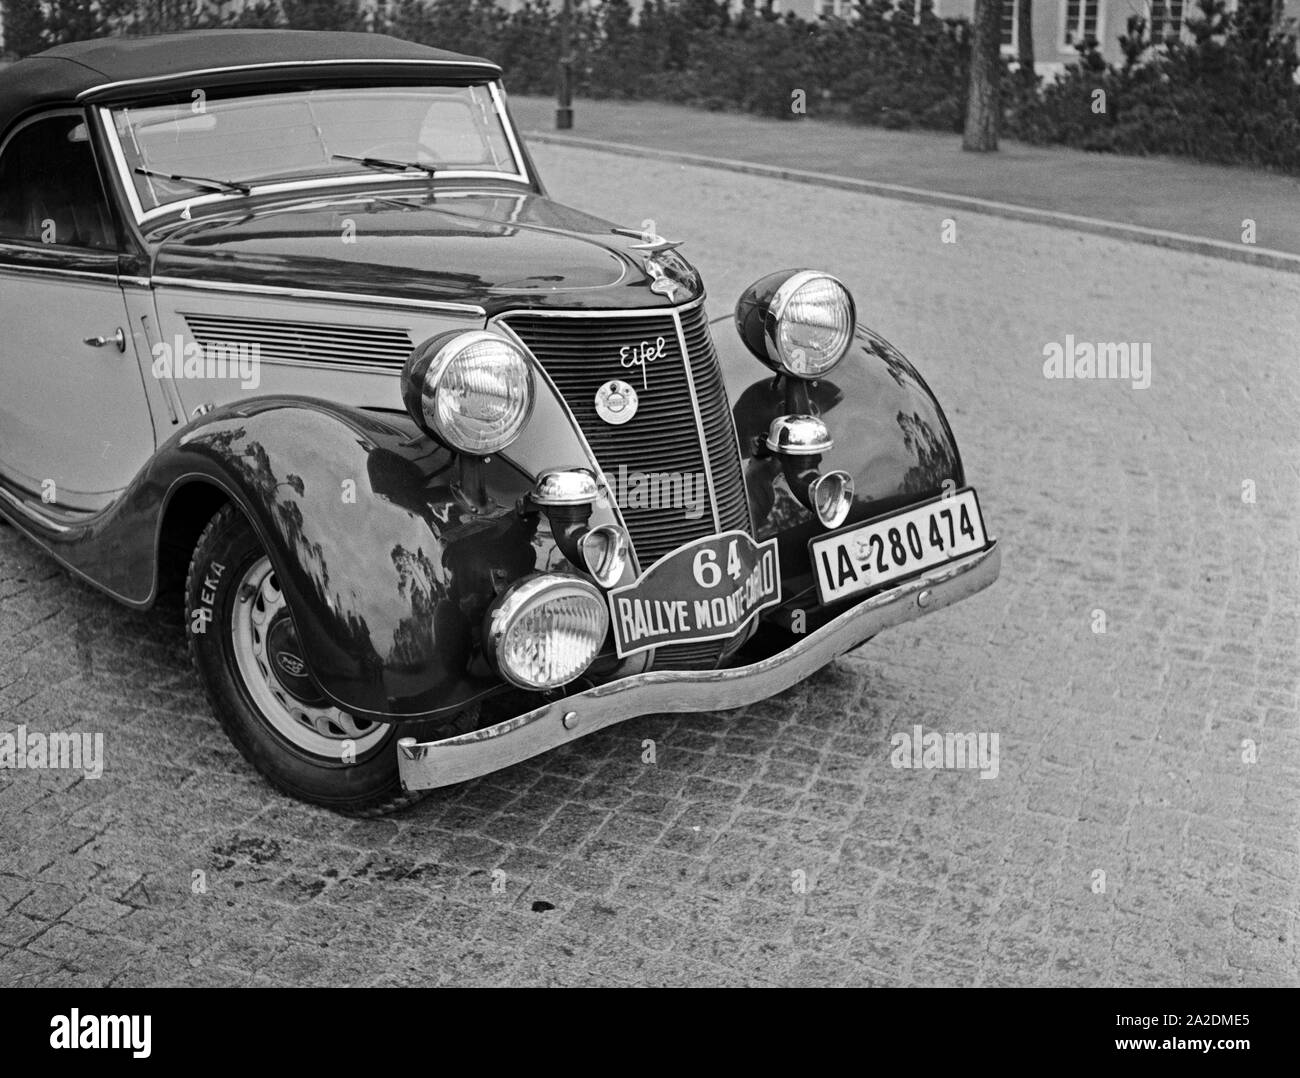 Der Wagen des deutschen Teams für die Rallye Monte Carlo, der Ford Eifel, Deutschland 1930er Jahre. The German car for the Rallye Monte Carlo, Germany 1930s. Stock Photo